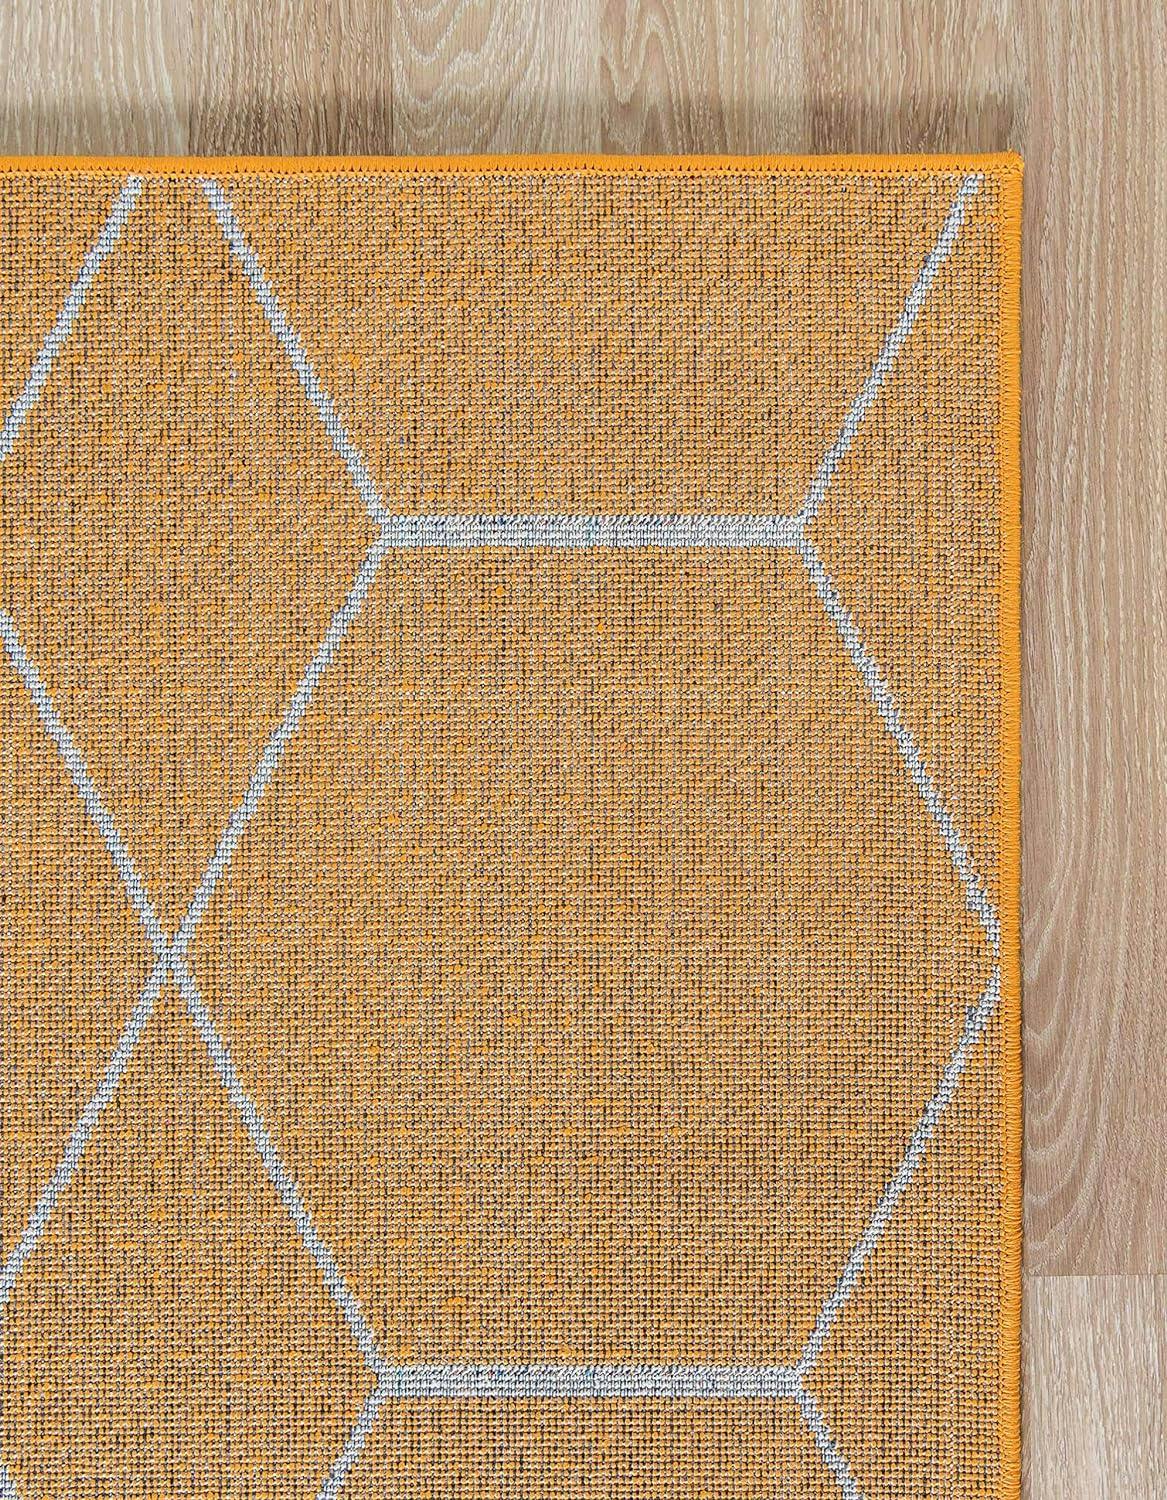 Vivid Orange and Ivory Geometric Trellis 6' x 9' Area Rug